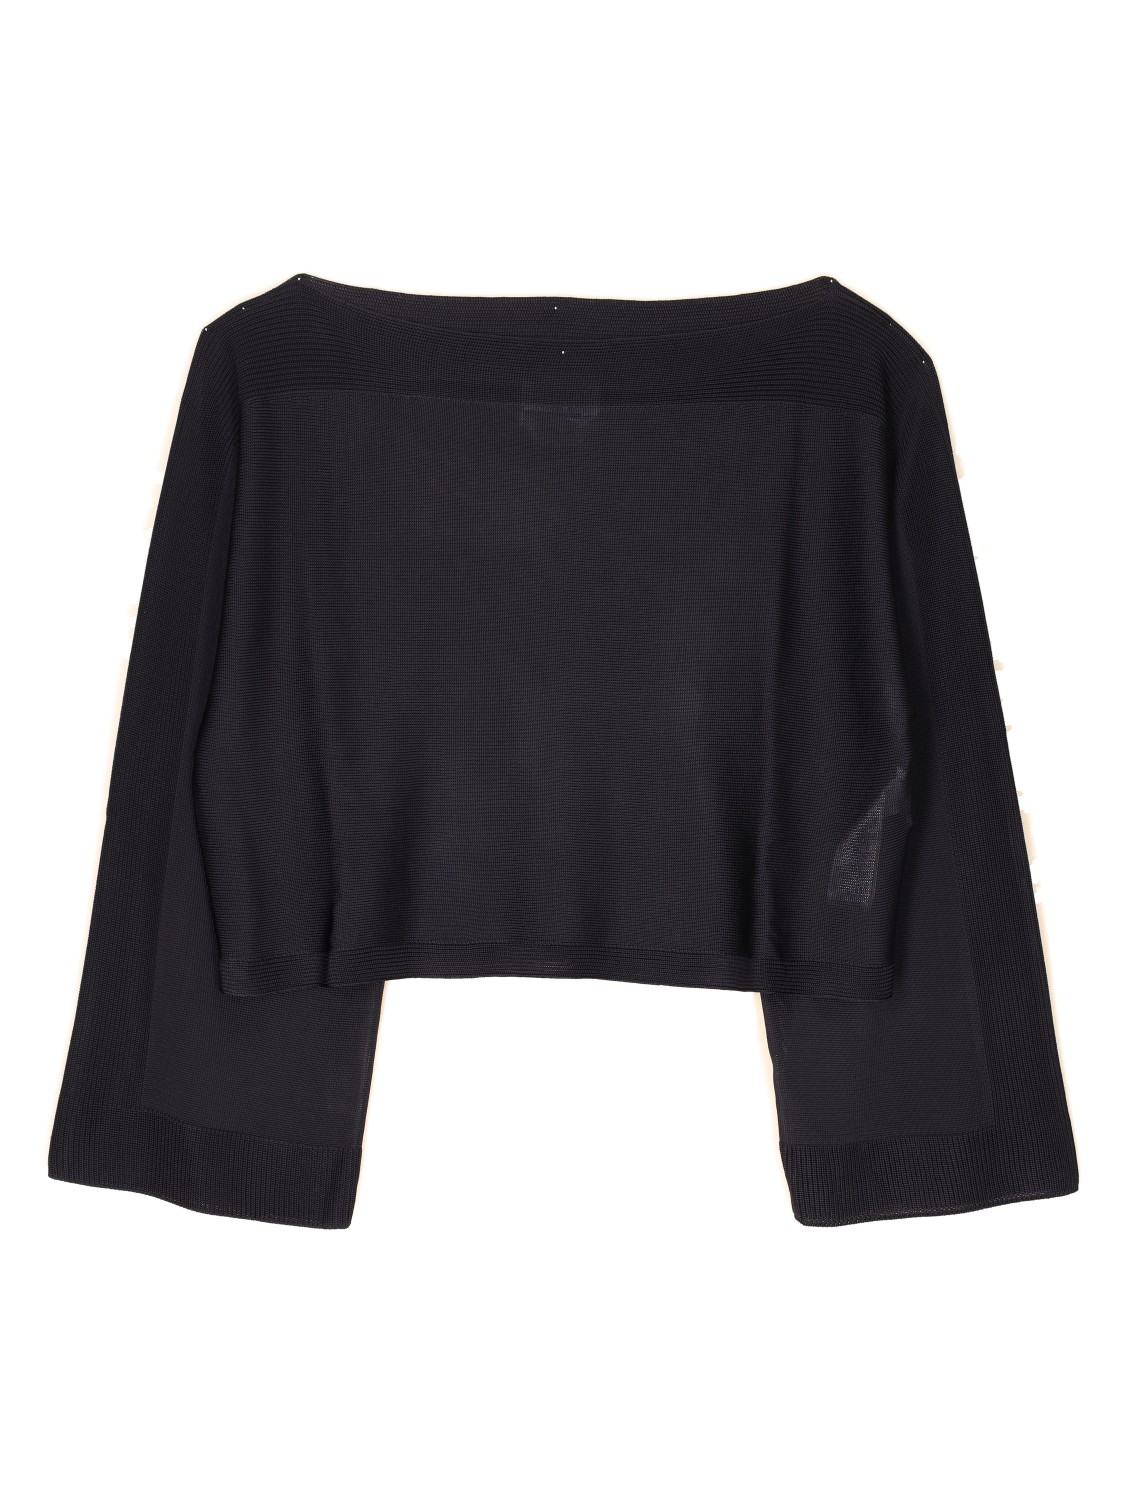 SA SU PHI  Bat – Leicht durchlässiger Pullover   schwarz 34